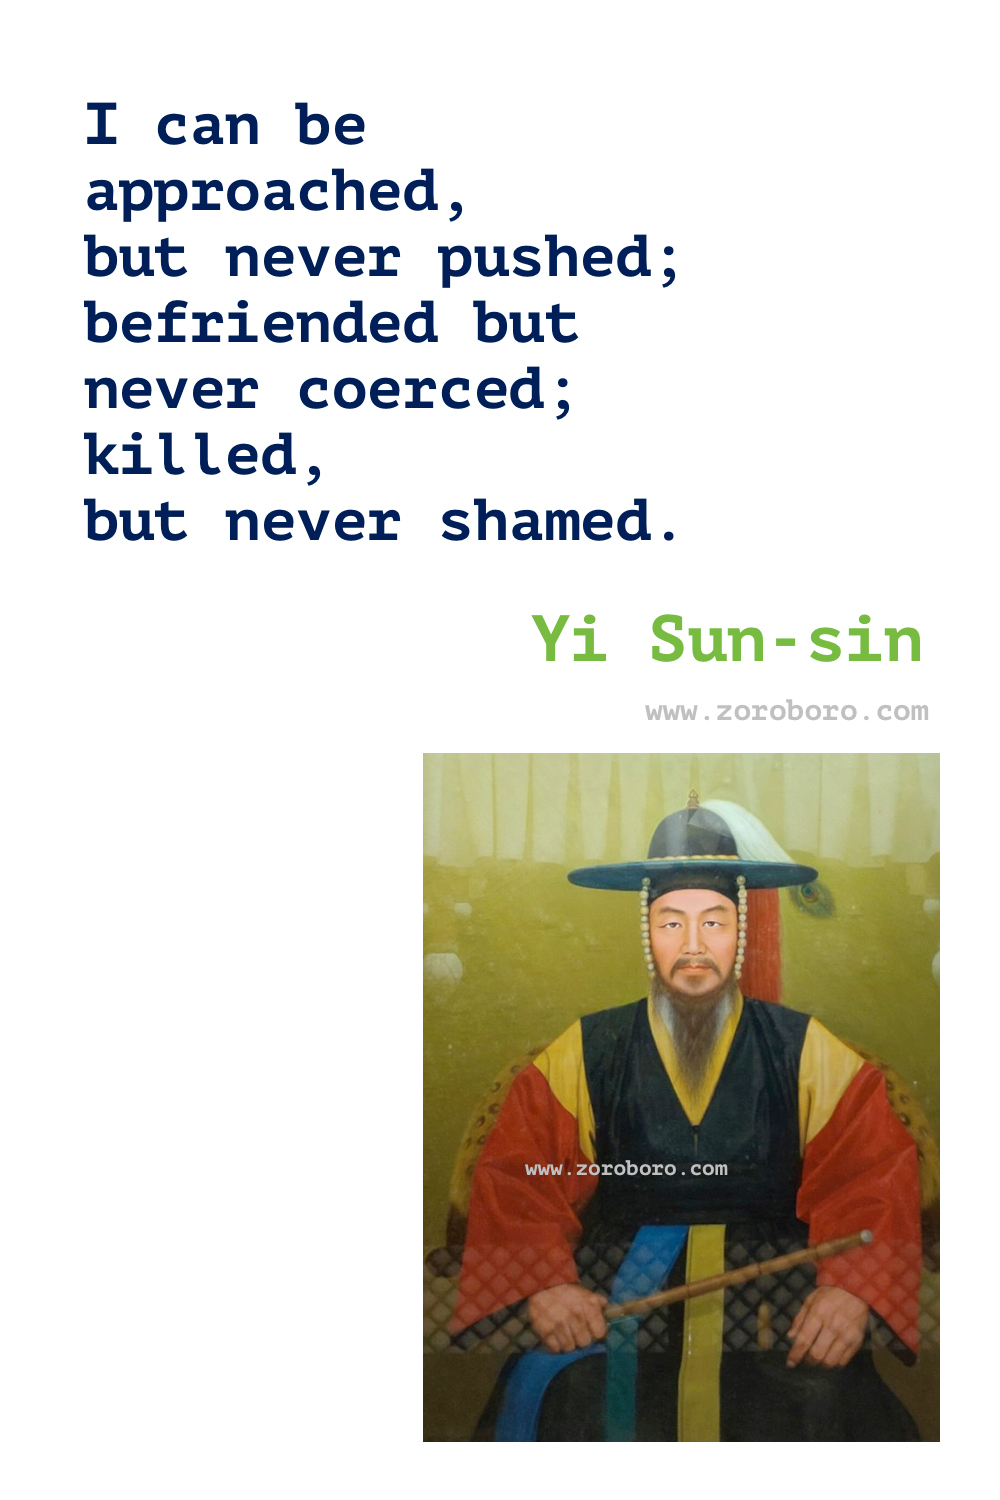 Yi Sun-sin Quotes, Yi Sun-sin Philosophy, Yi Sun-sin Teachings, Yi Sun-sin War Quotes, Yi Sun-sin Poster/Image, Yi Sun-sin Quotes.